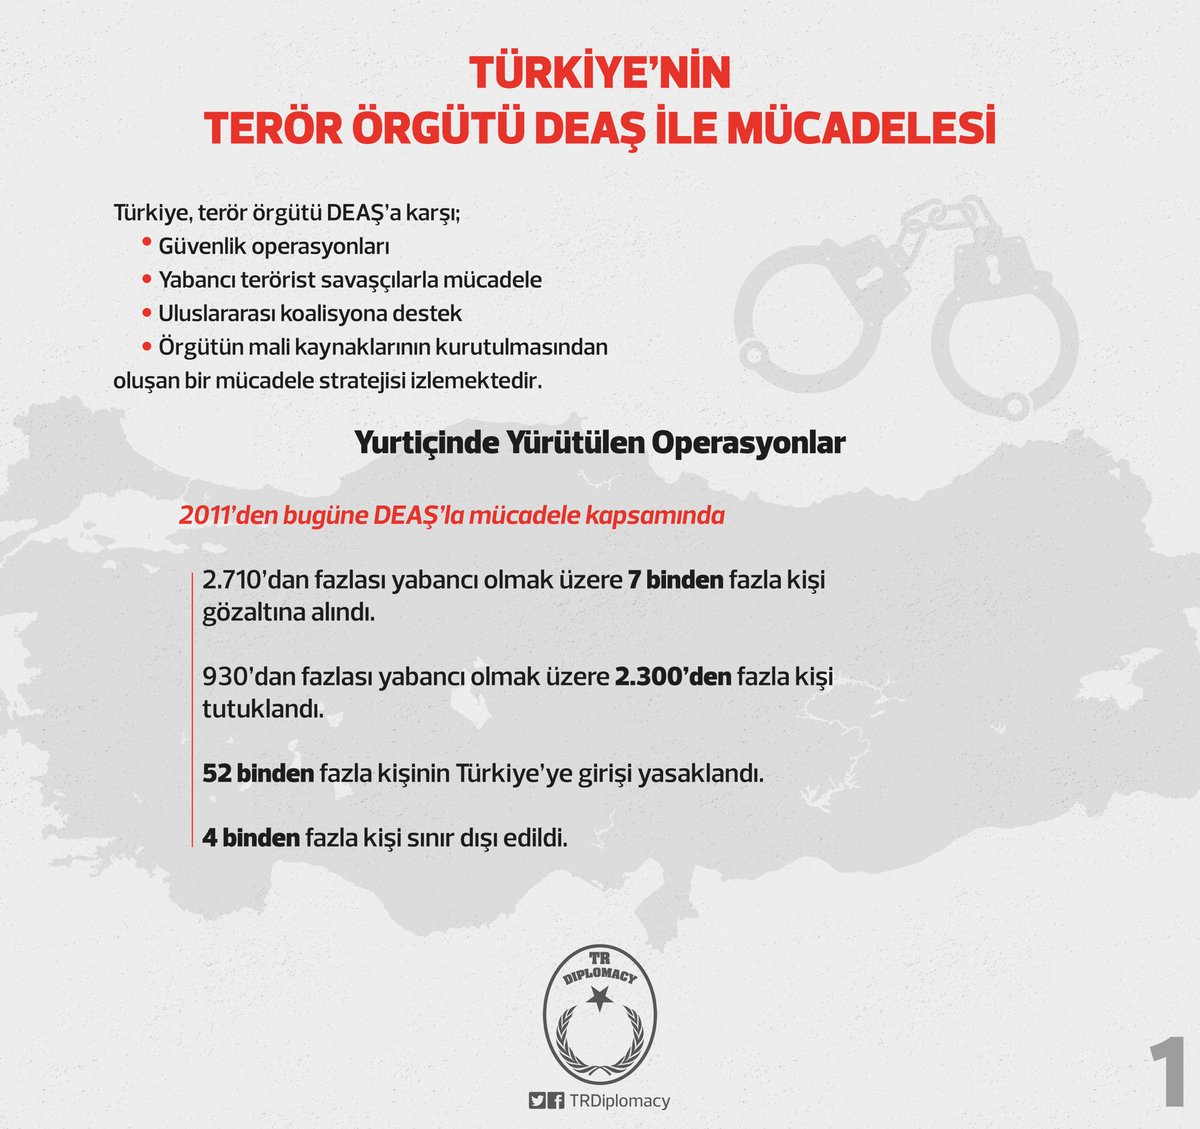 Türkiye'nin Terör Örgütü DEAŞ ile Mücadelesi